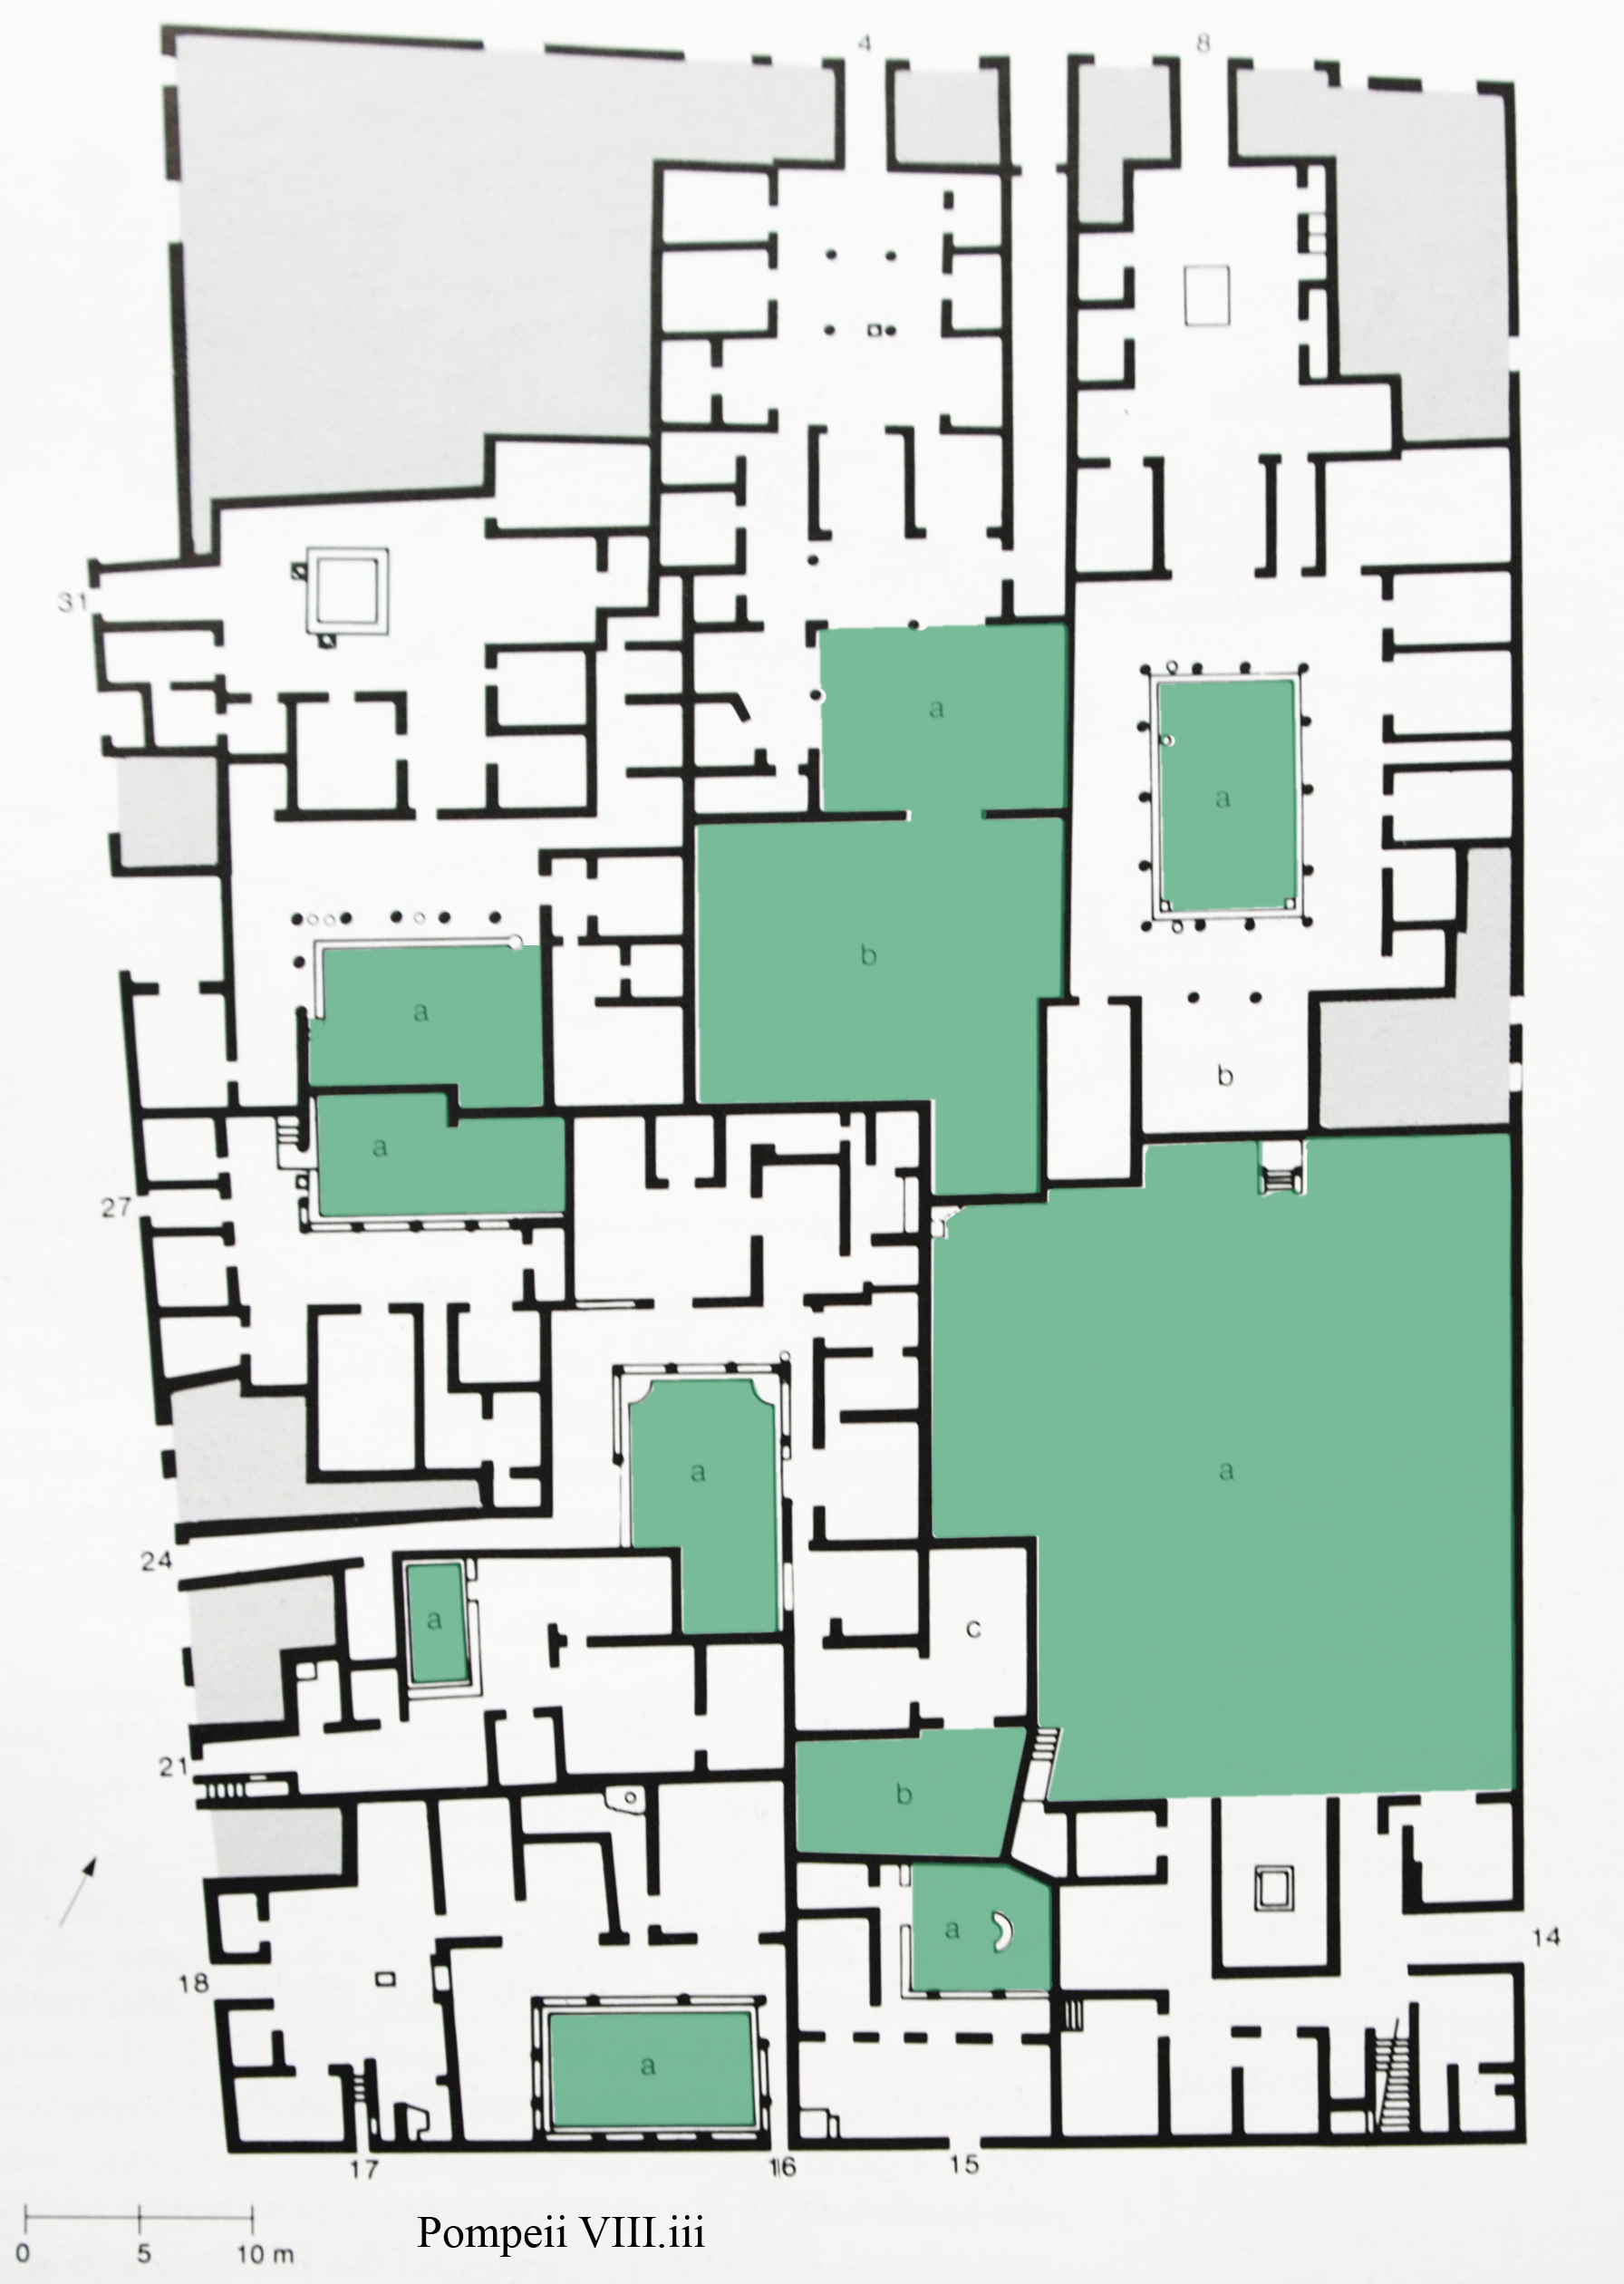 Plan of Region VIII Insula III